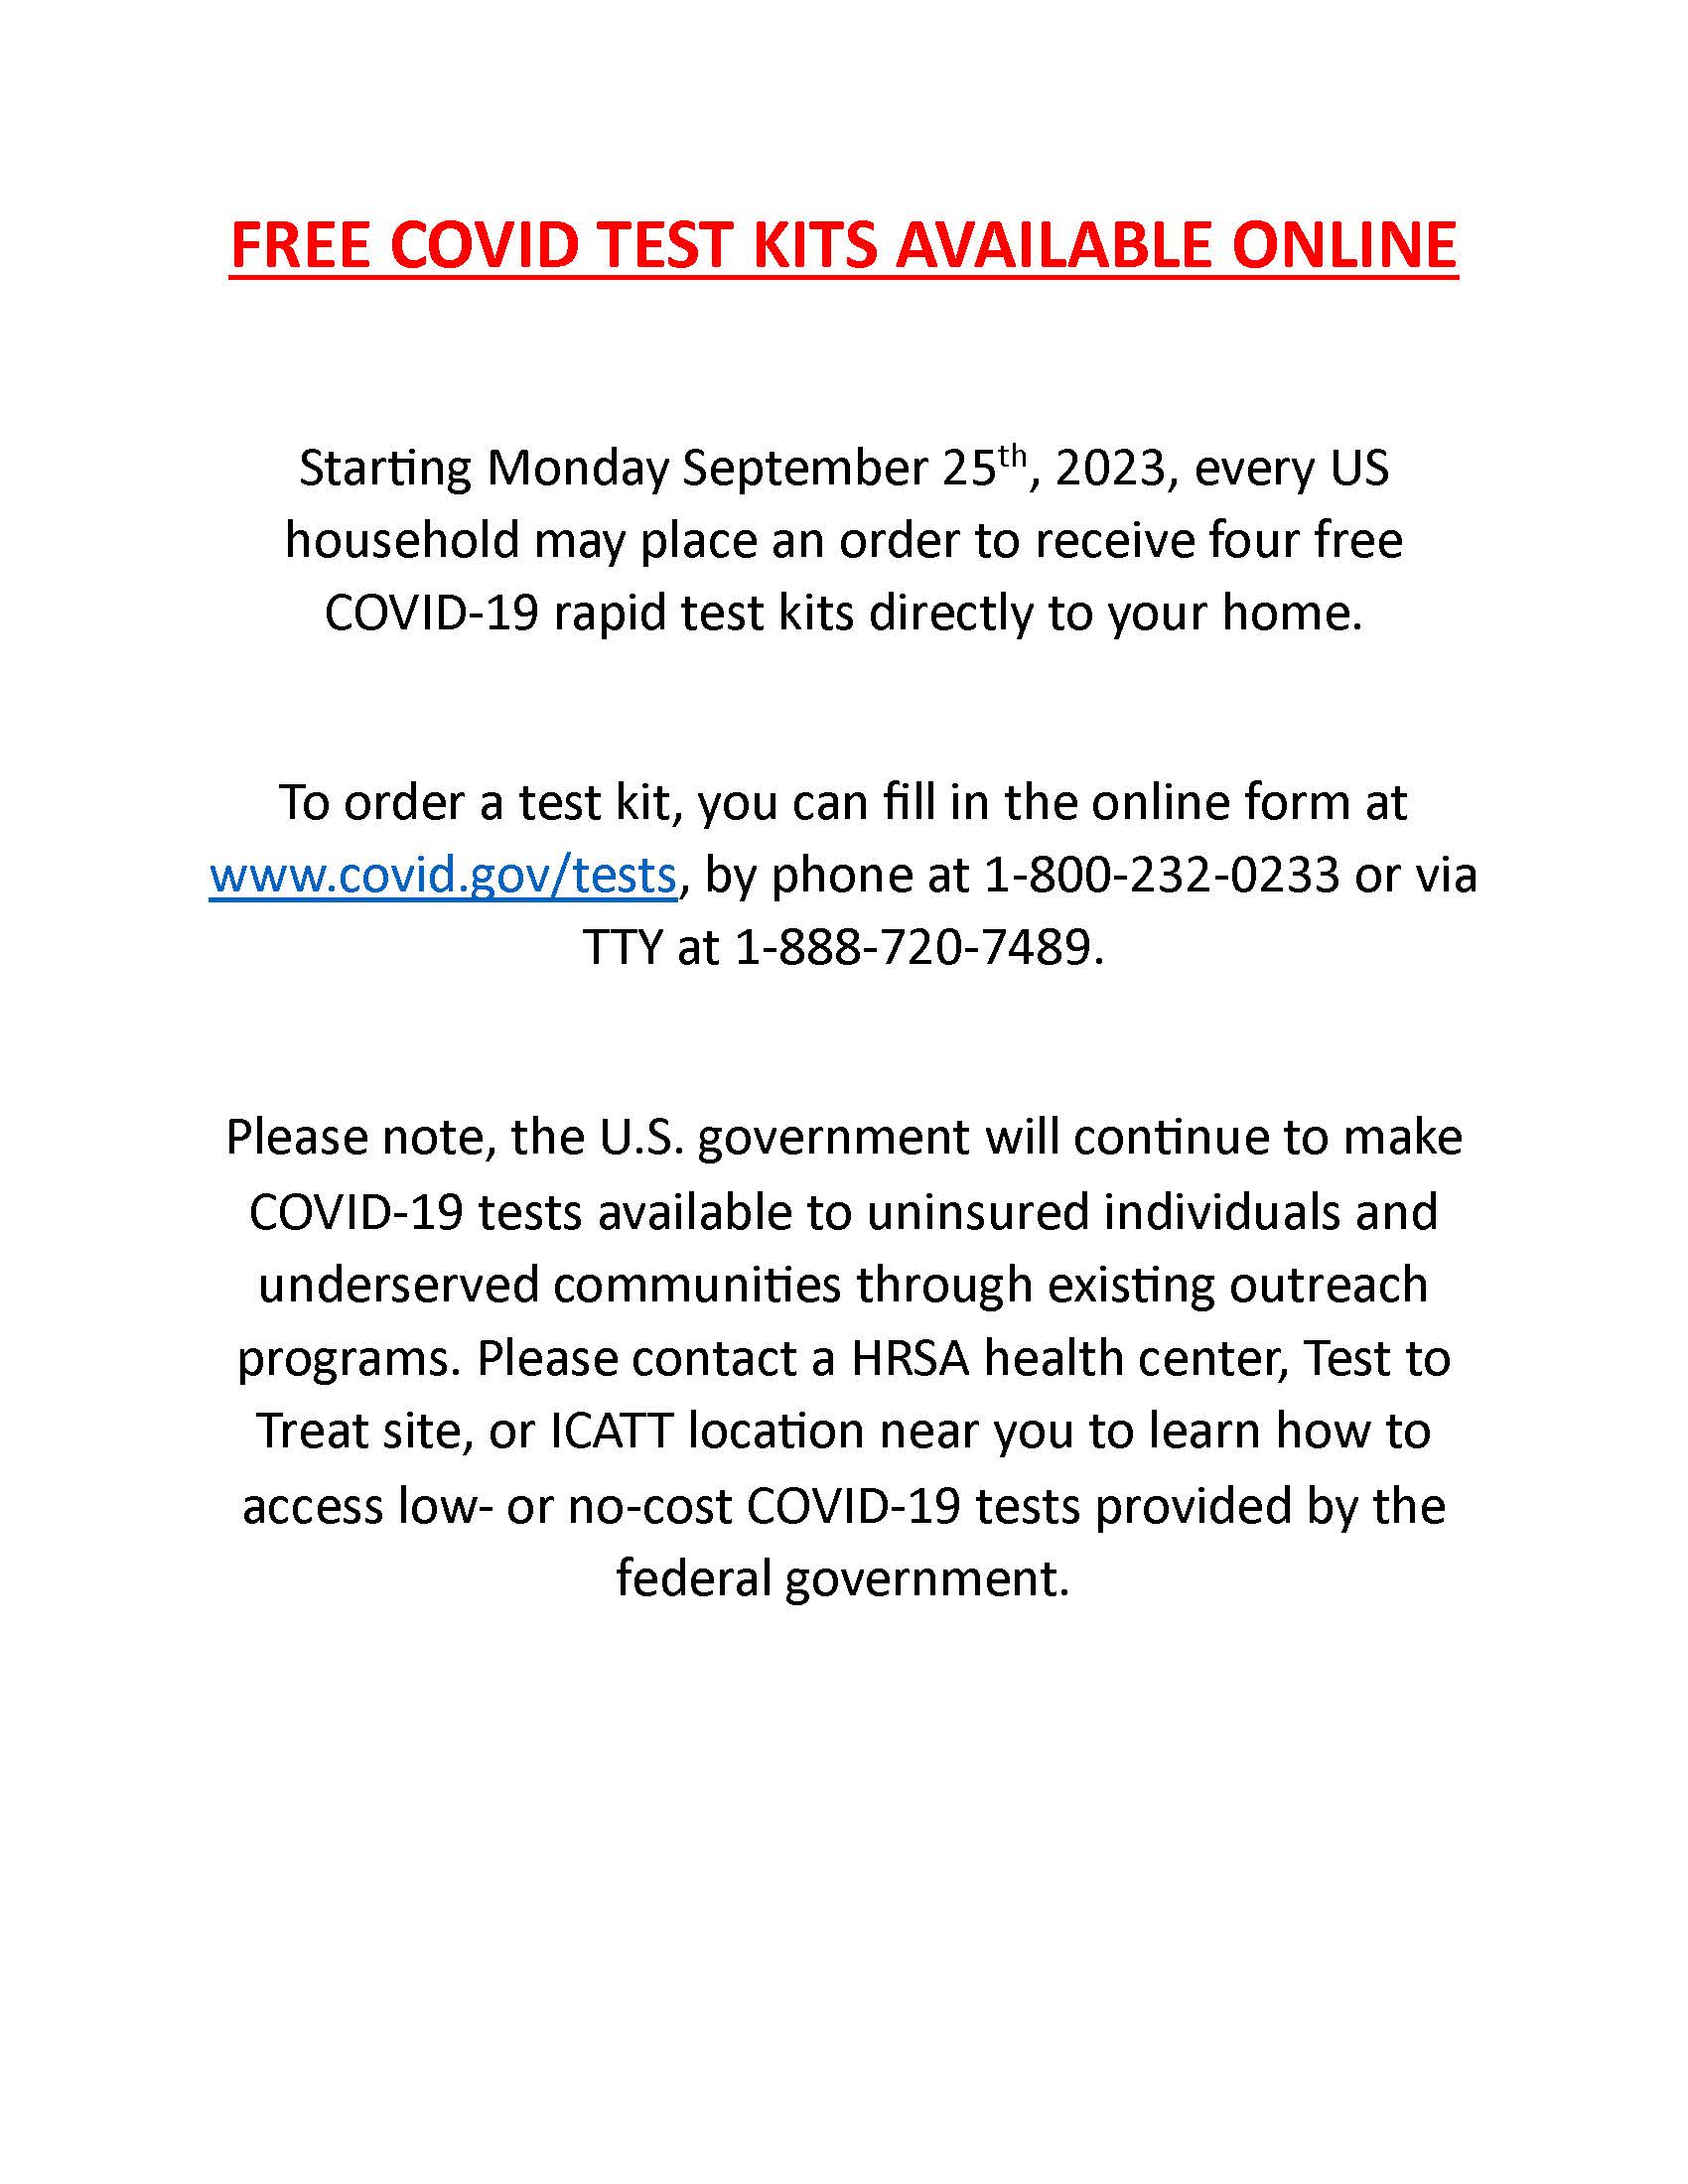 Free Covid Test Kits 2023